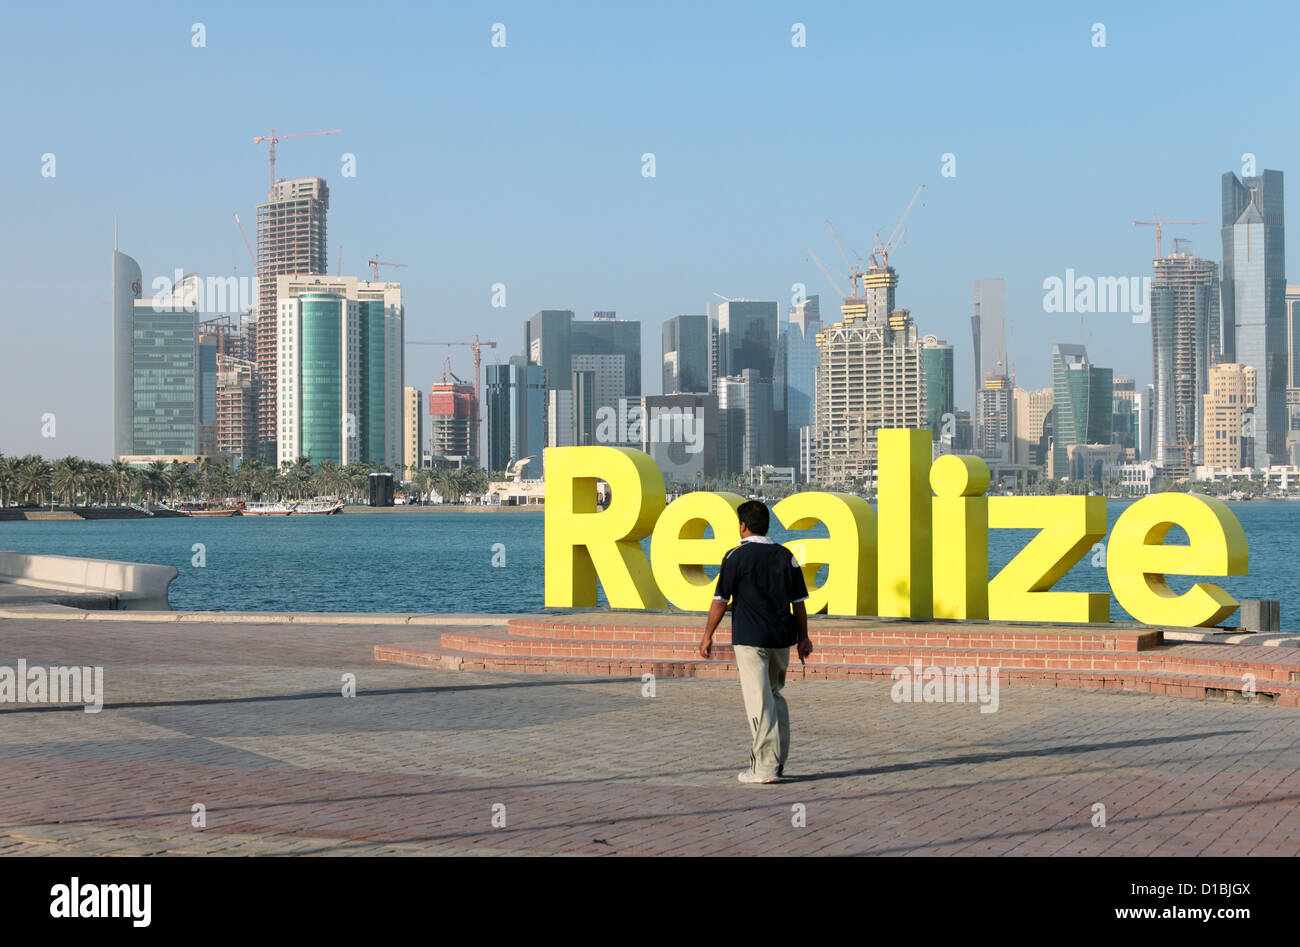 Un asiatico expat a Doha, in Qatar, passeggiate passato una moderna arte di installazione con la parola "alize' di fronte alla crescente skyline Foto Stock